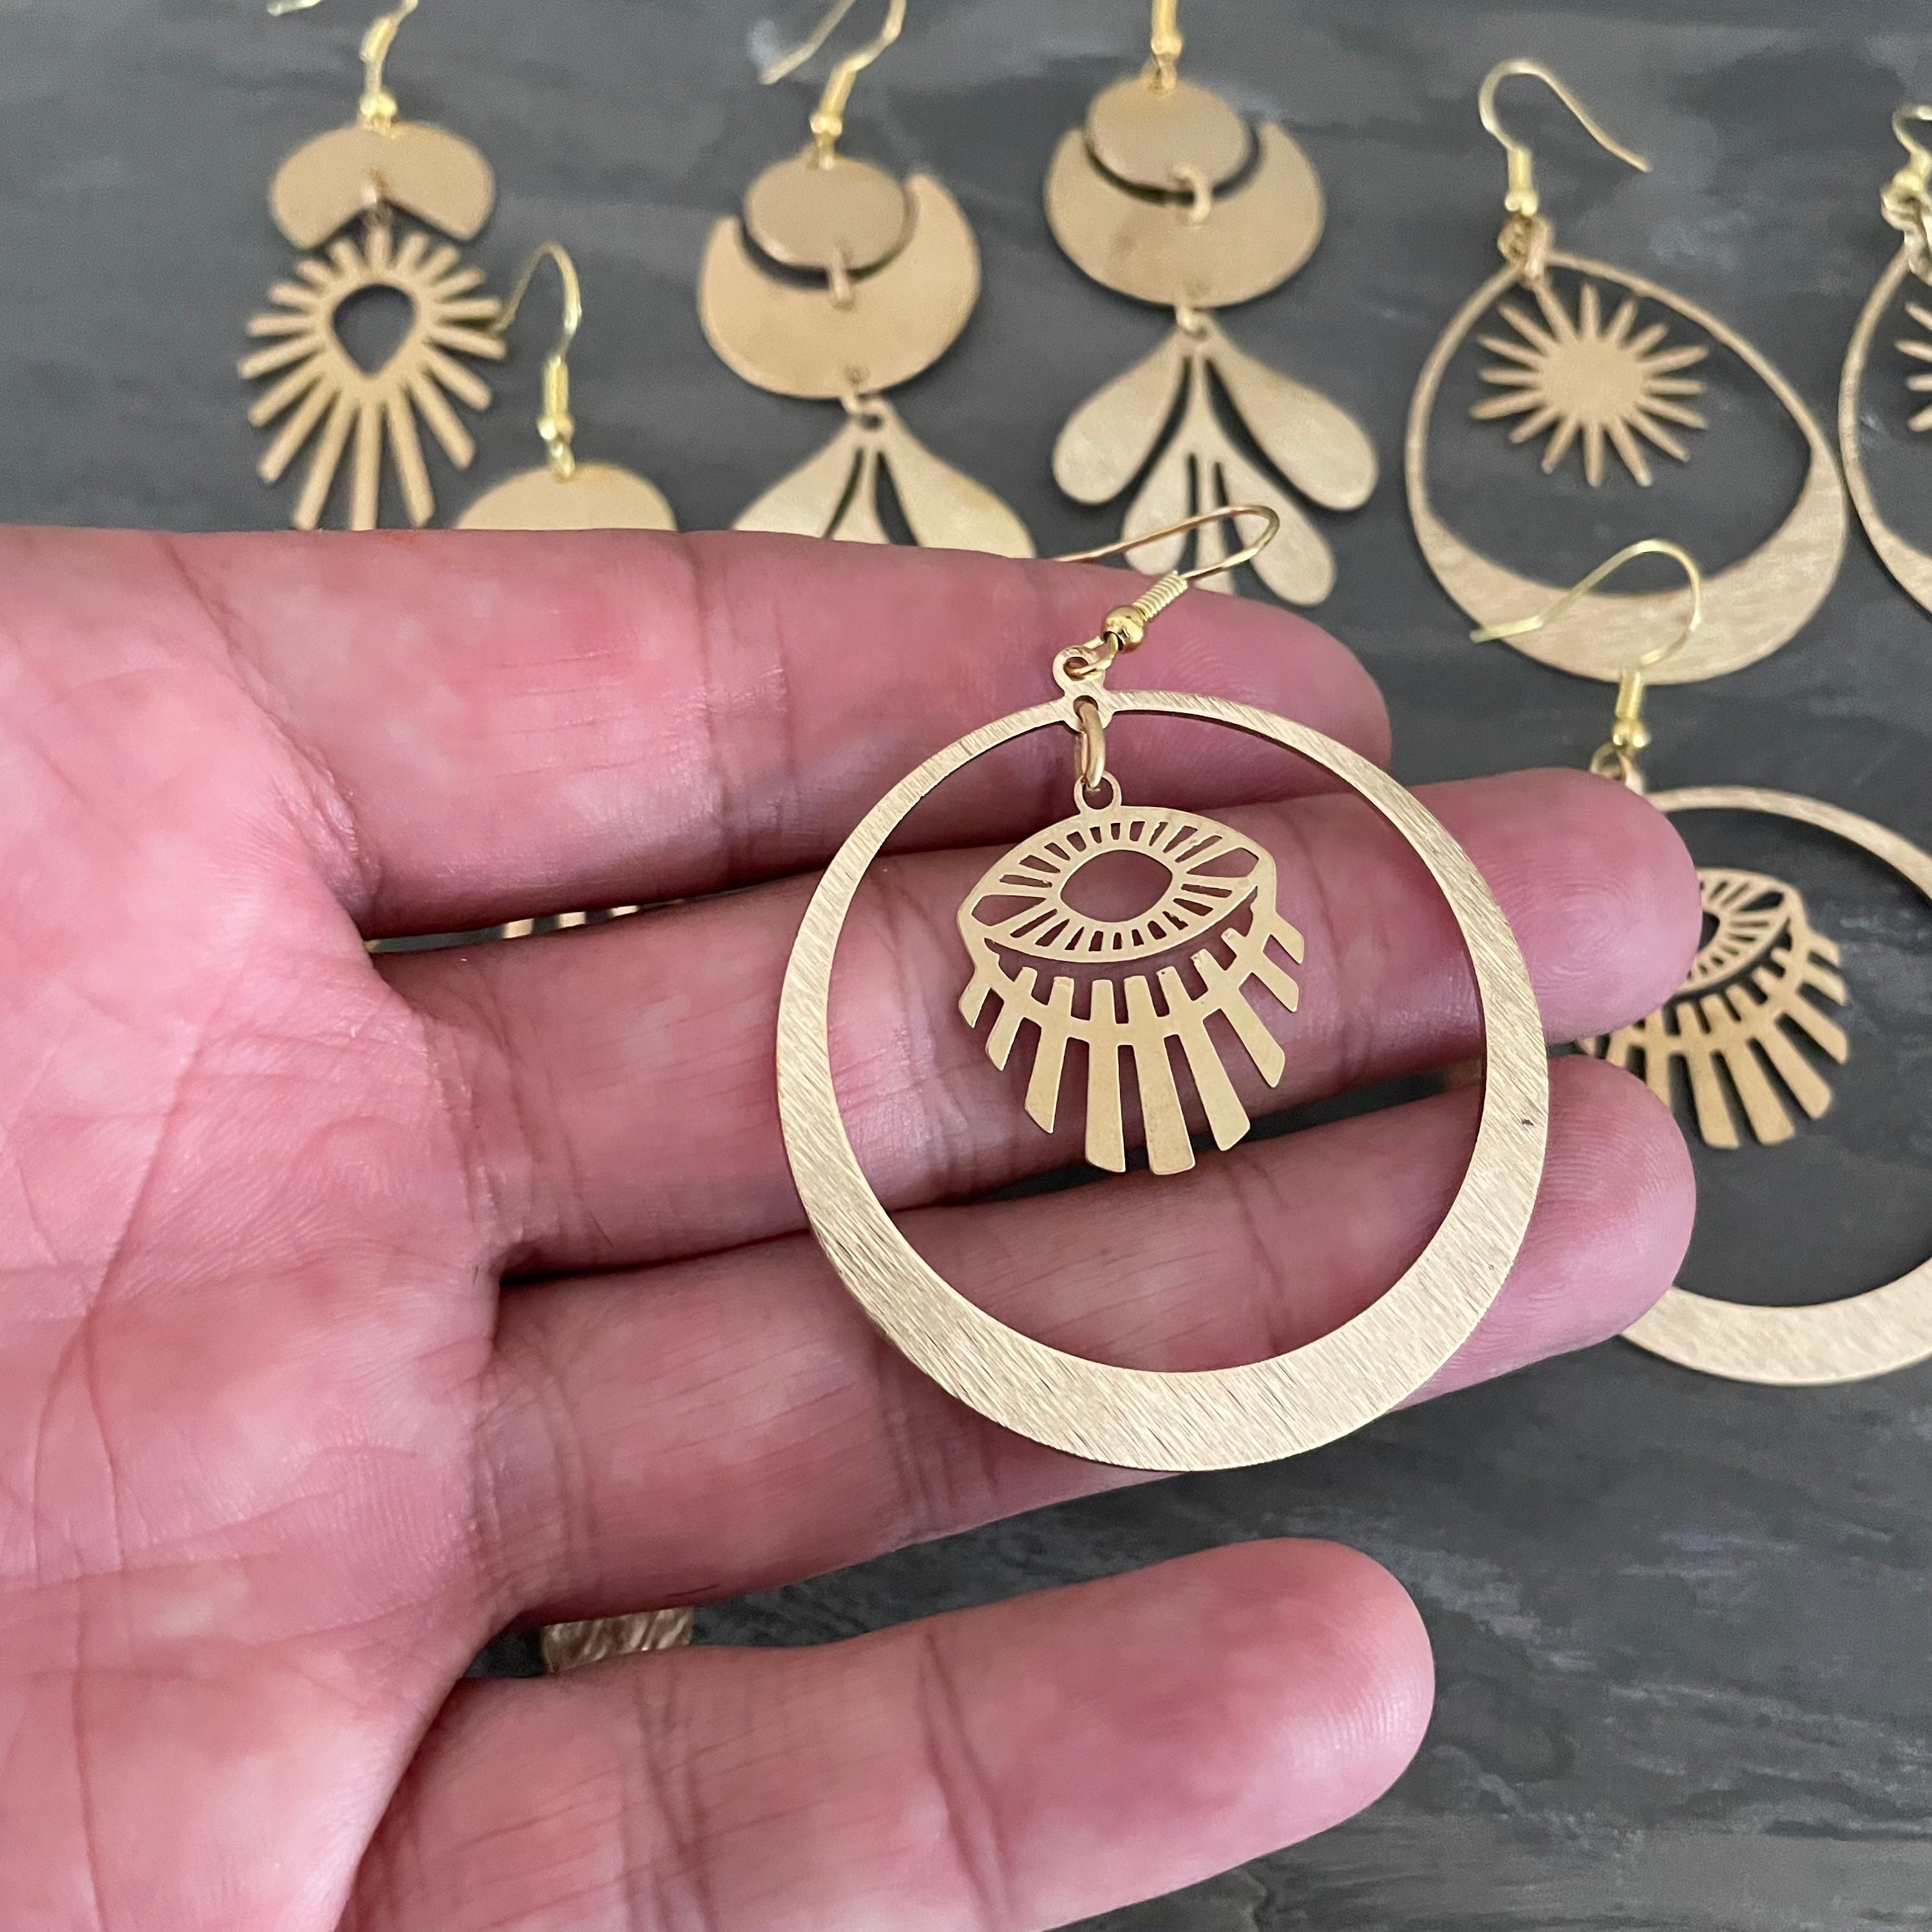 Wholesale BENECREAT 12Pcs Brass Stud Earring Findings 